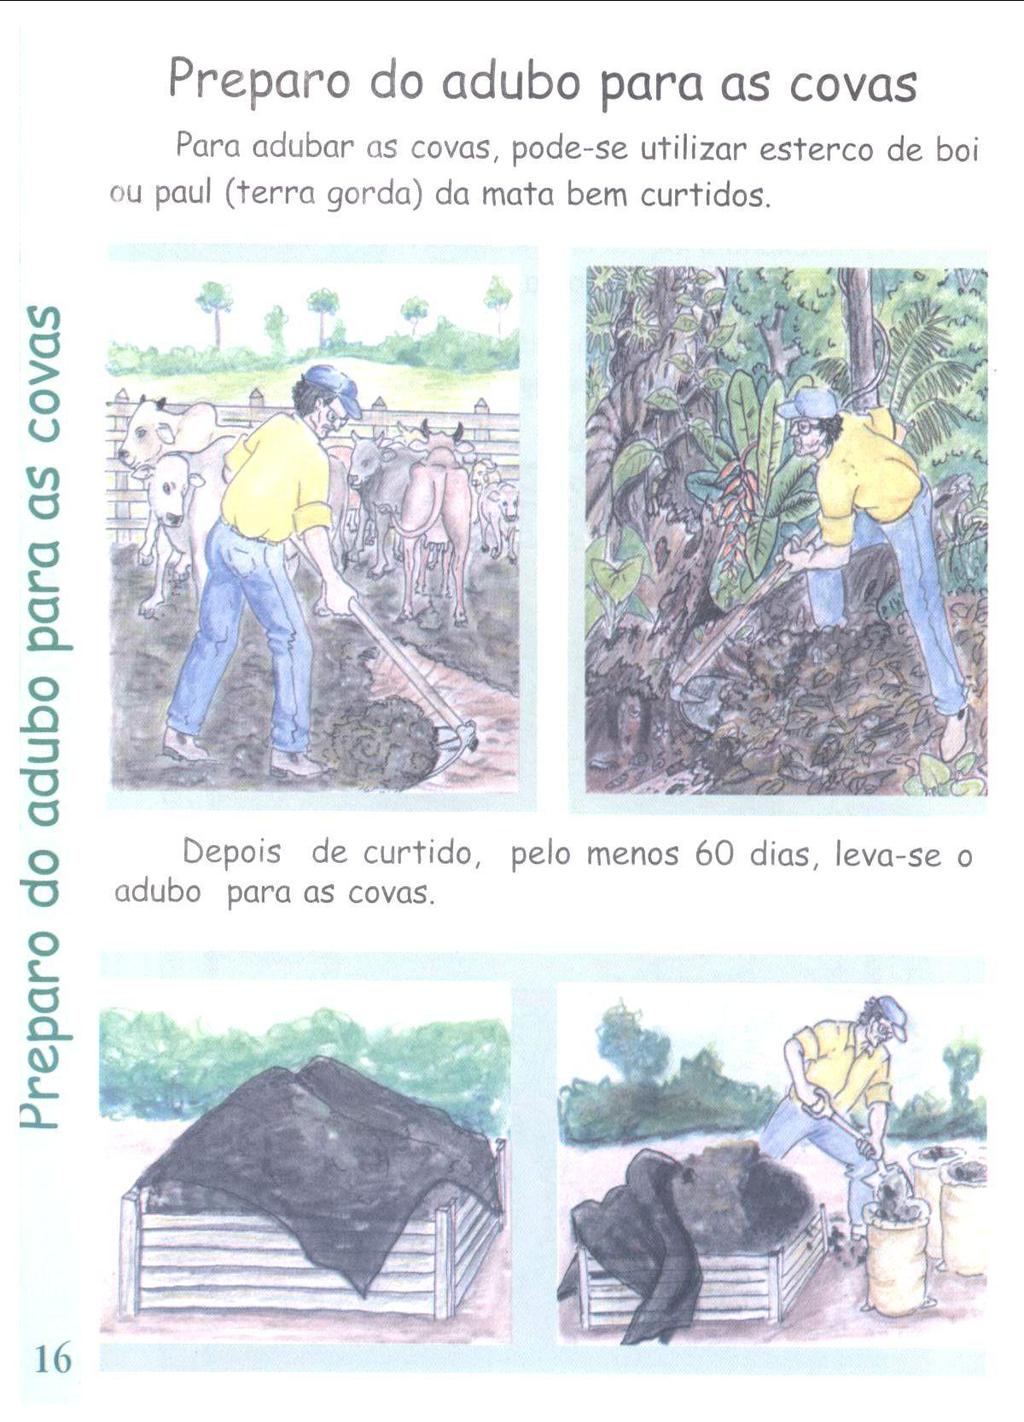 Preparo do adubo para as covas Para adubar as covas, pode-se utilizar esterco de boi ou paul (terra gorda) da mata bem curtidos.